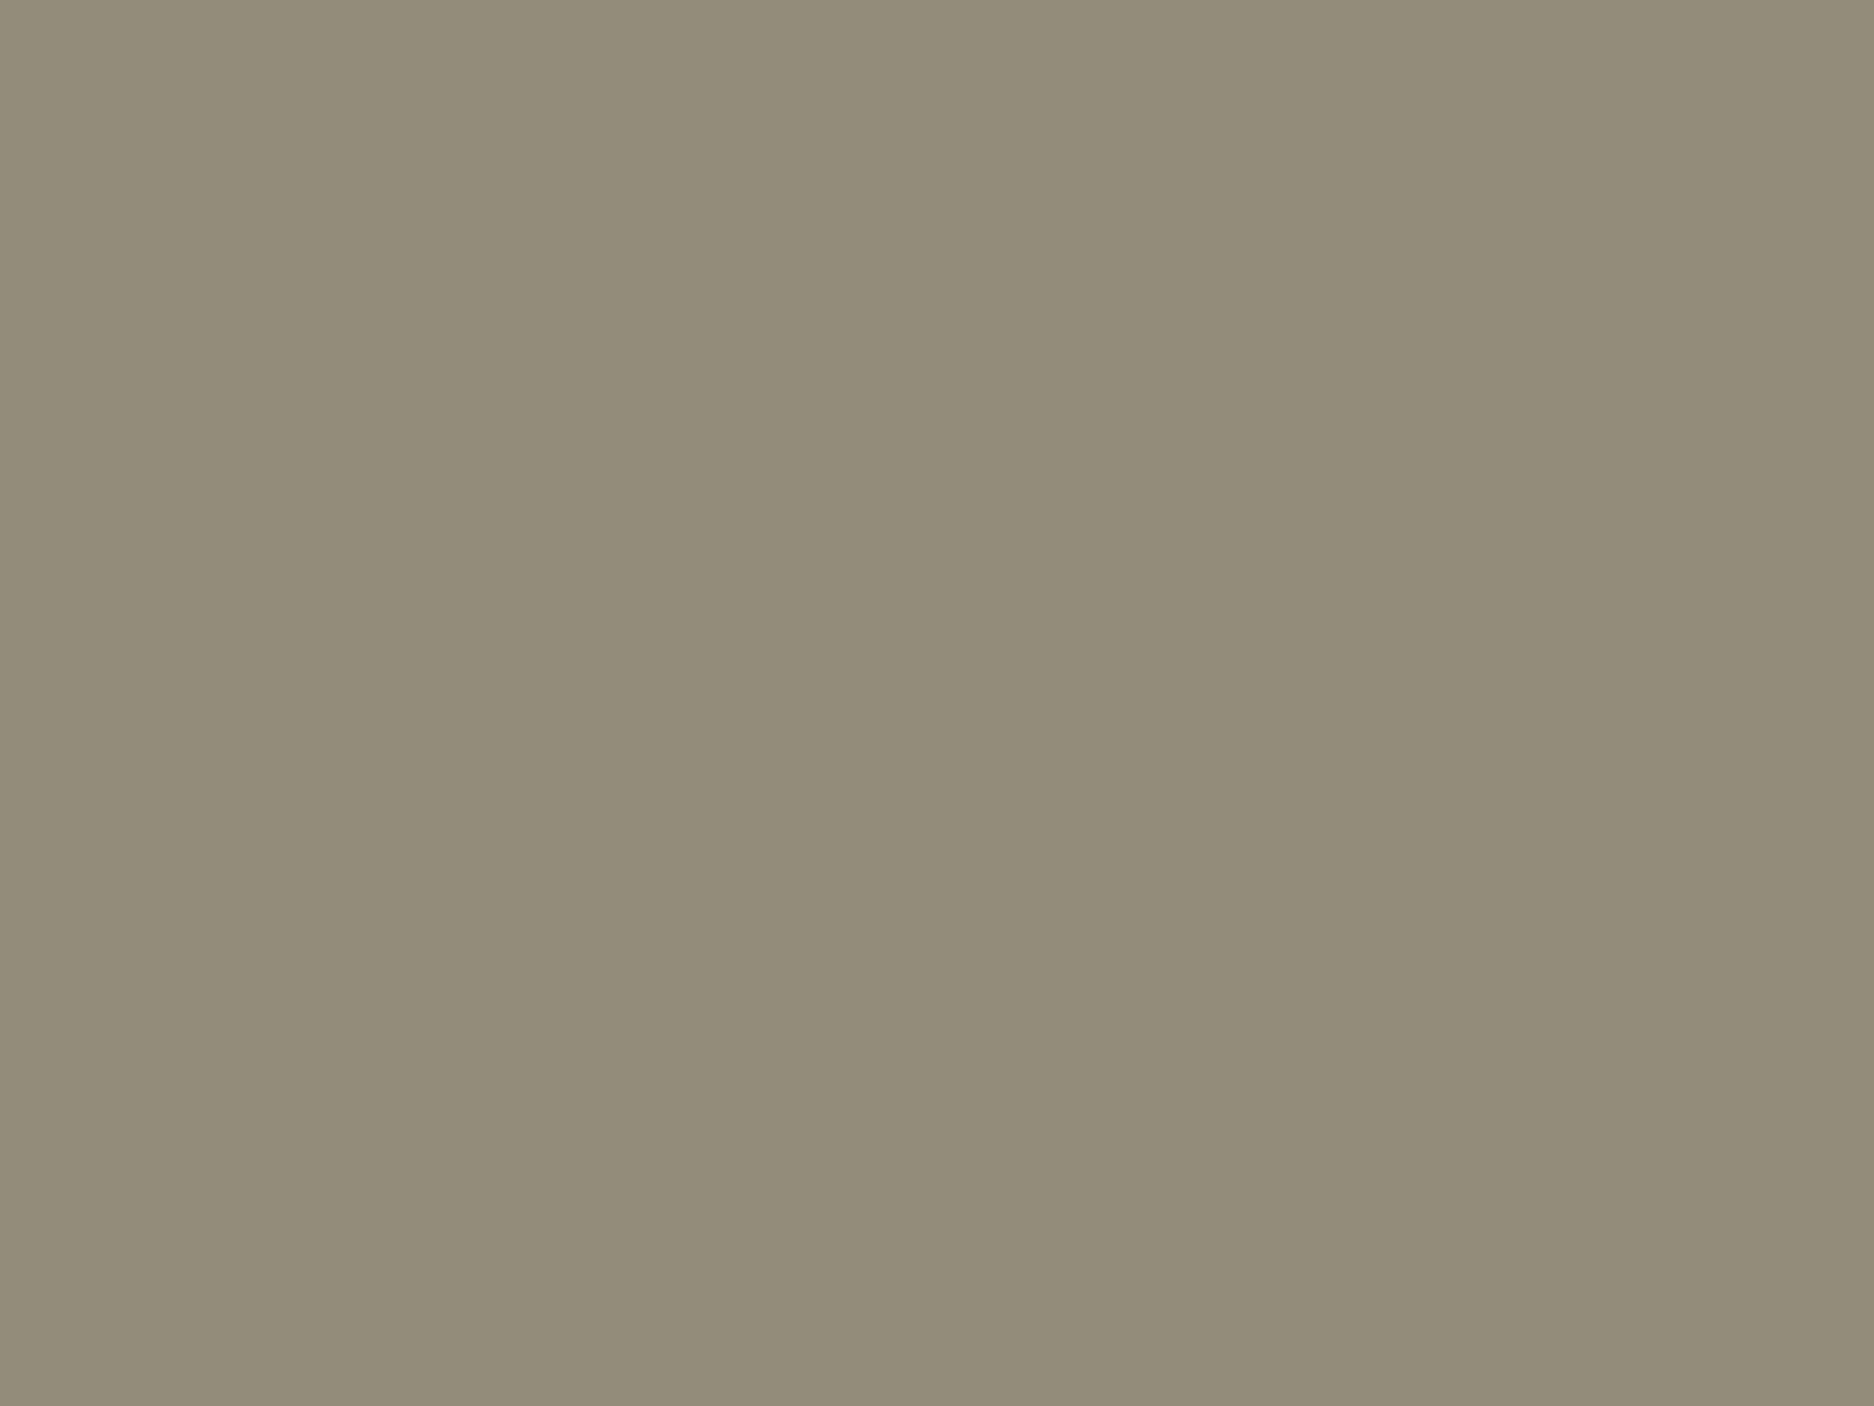 Коробочка акварельных красок Германия, нач.1920-х. Привезена в подарок сестре Людмиле. Государственный музей В.В. Маяковского, Москва